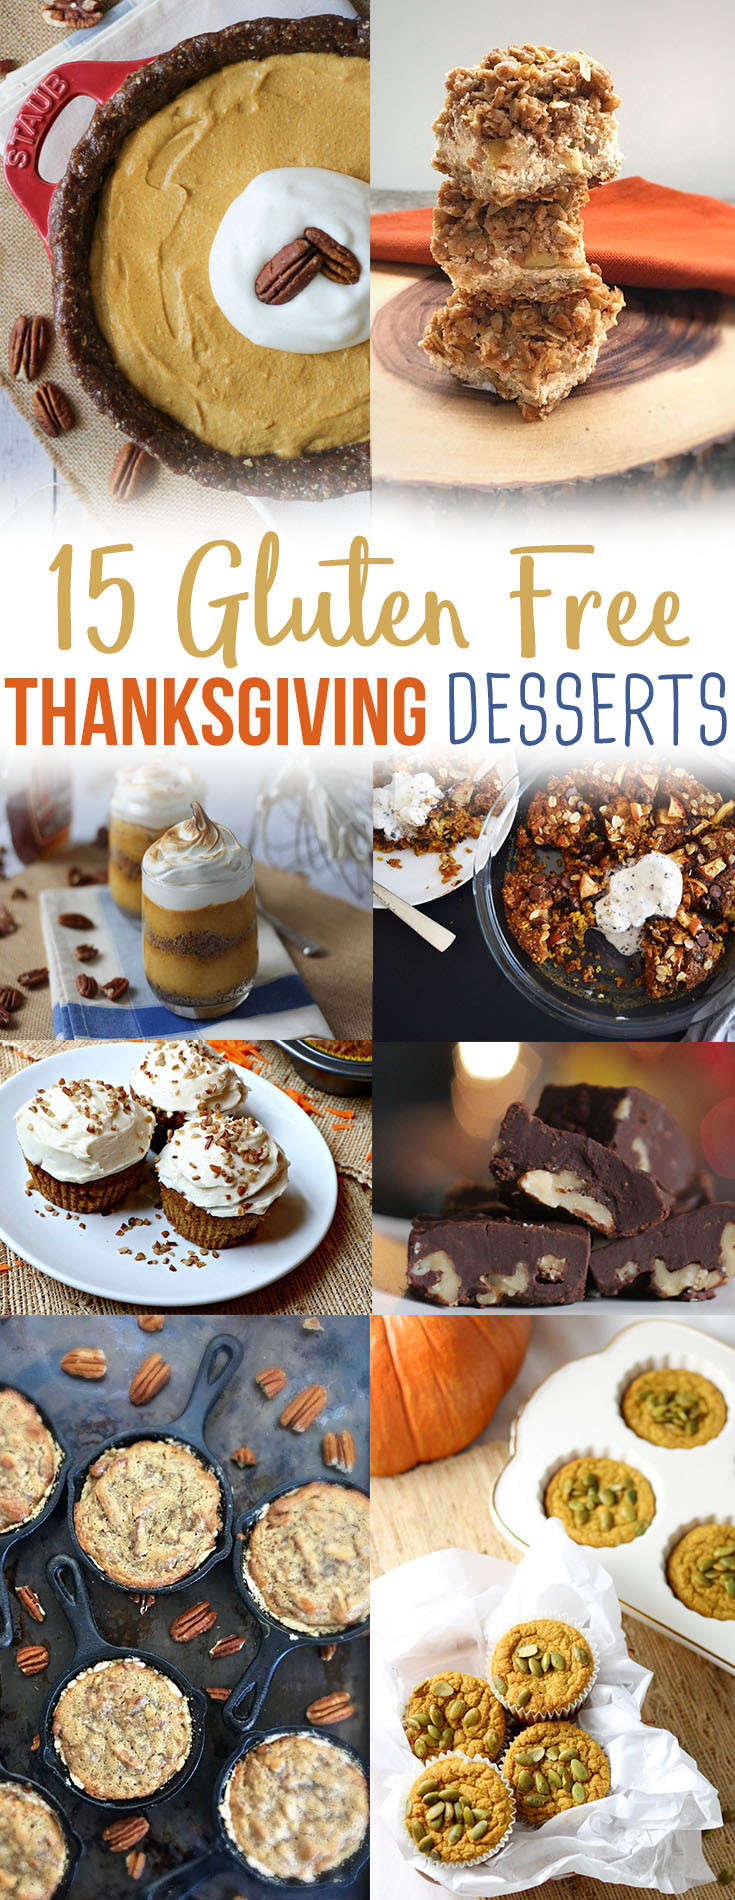 Gluten Free Desserts For Thanksgiving
 15 Healthy Gluten Free Thanksgiving Dessert Recipes